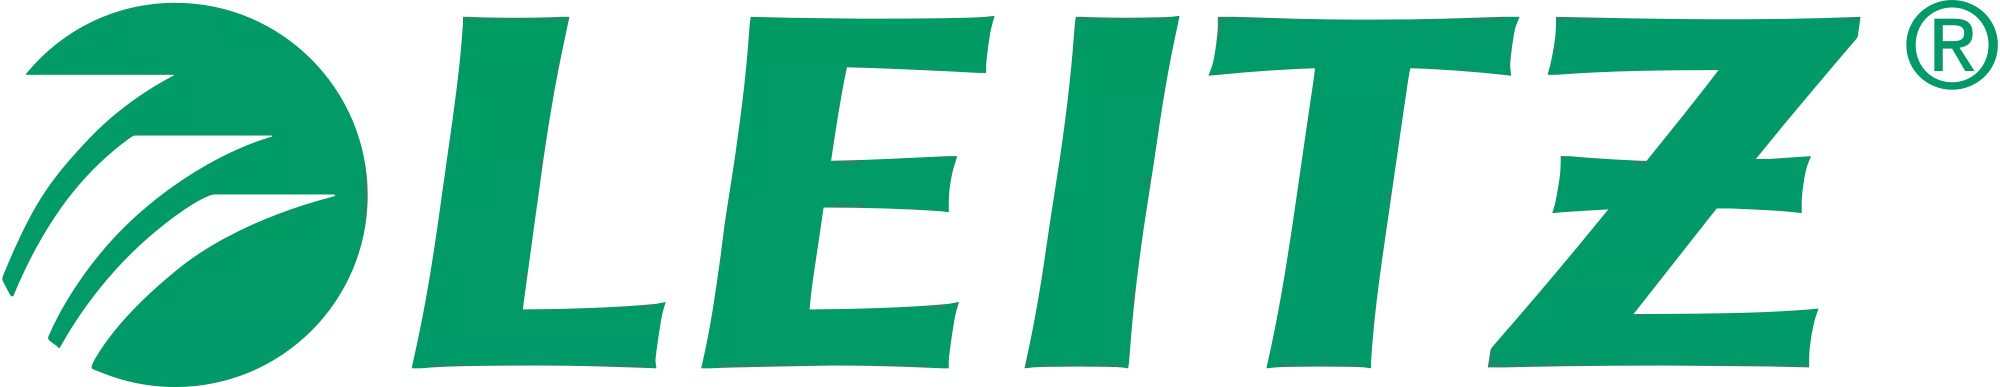 Leitz logo